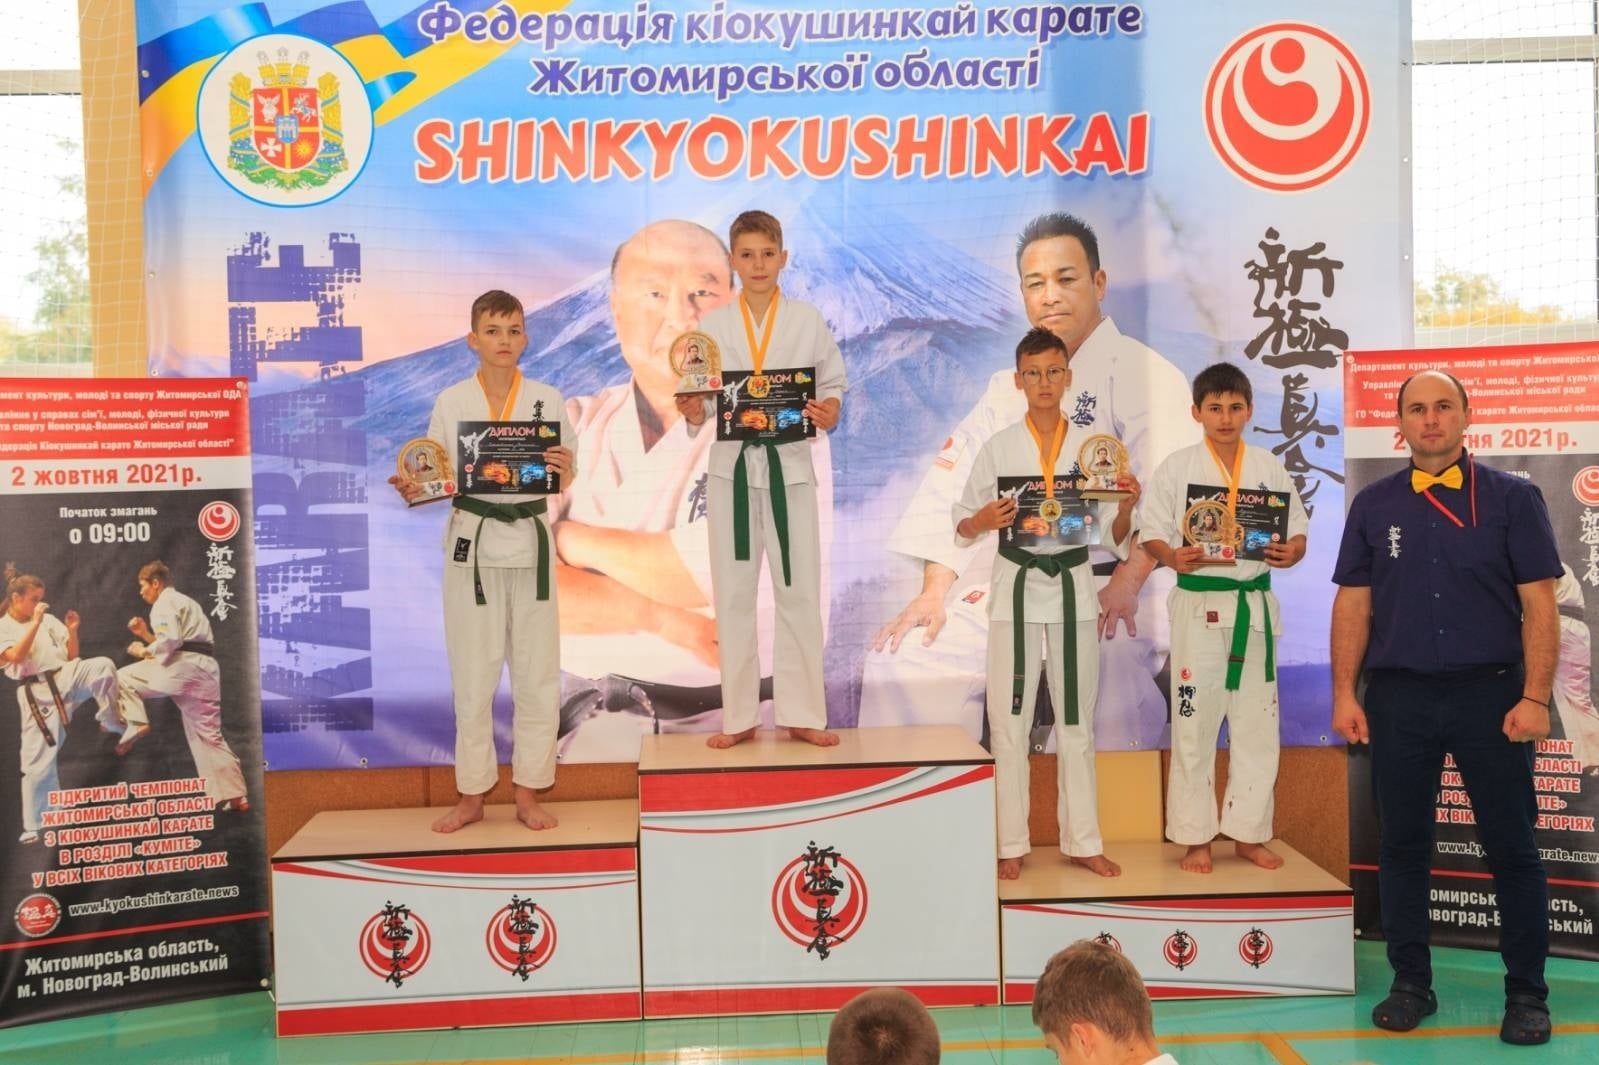 Відбувся відкритий чемпіонат Житомирської області з кіокушинкай карате